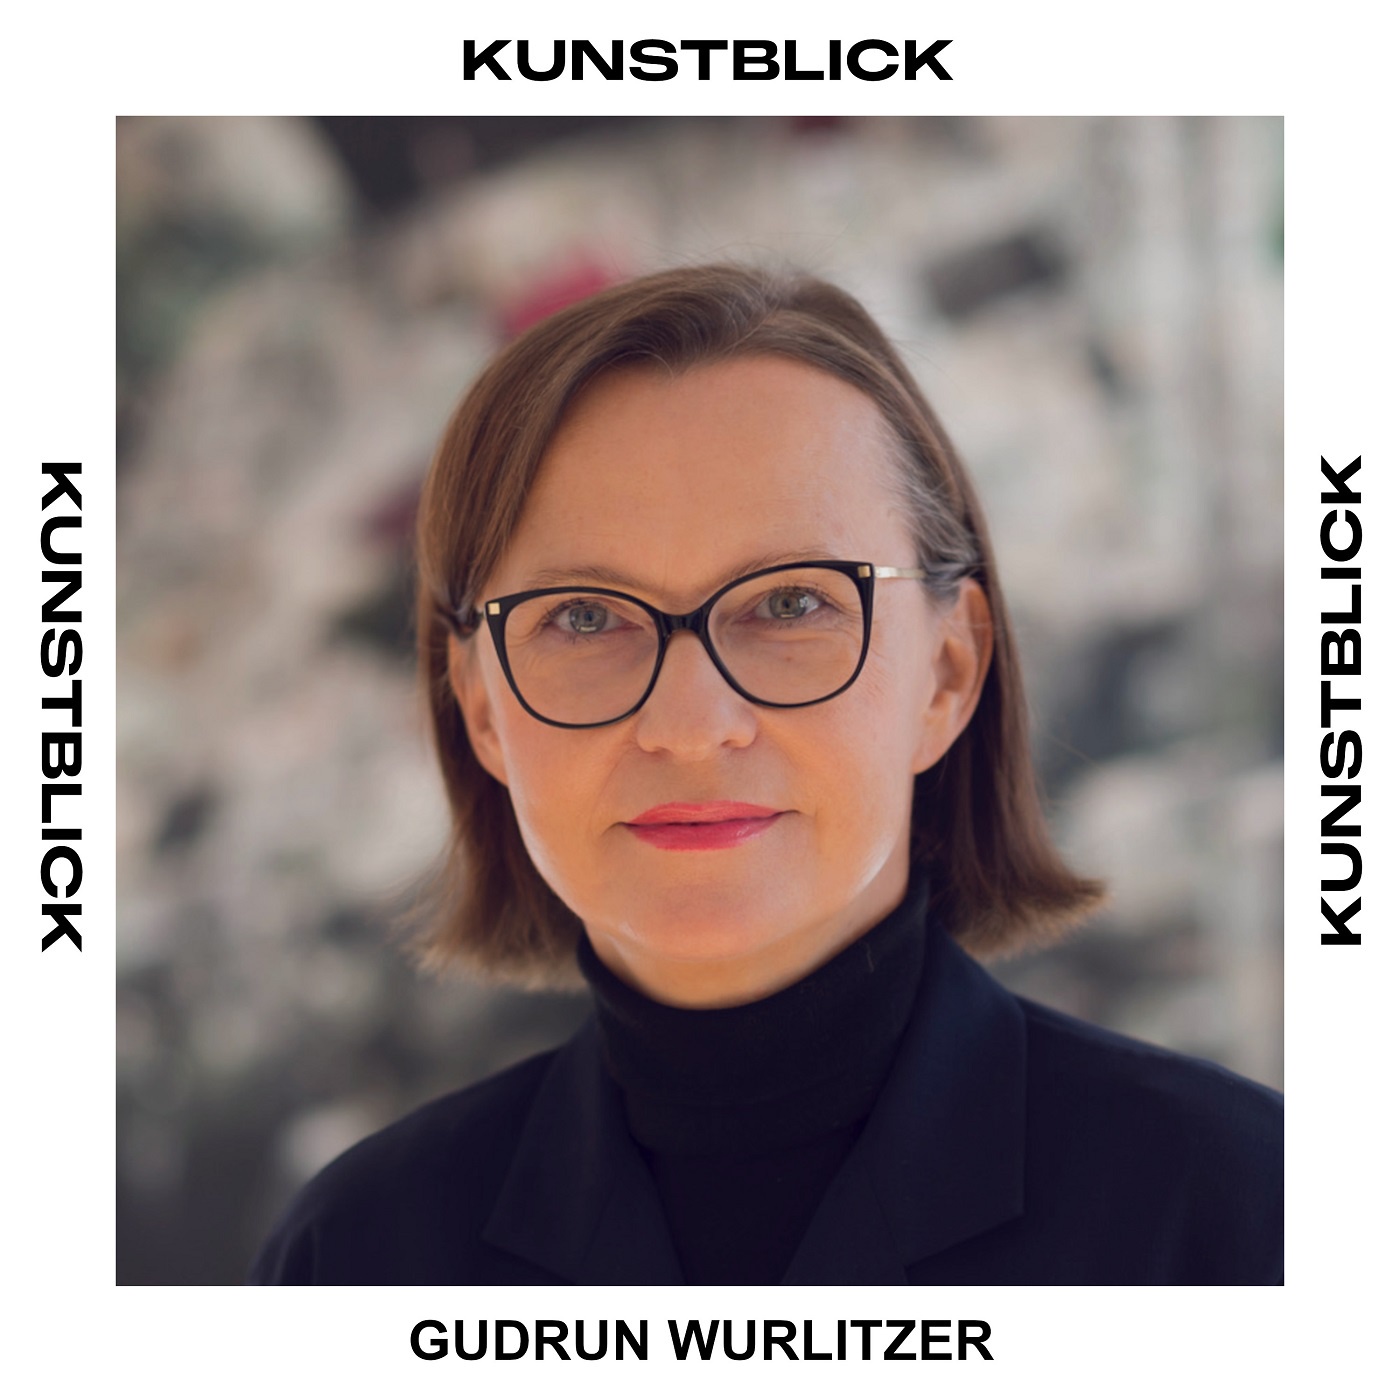 Gudrun Wurlitzer - Wurlitzer Architekten, Berlin